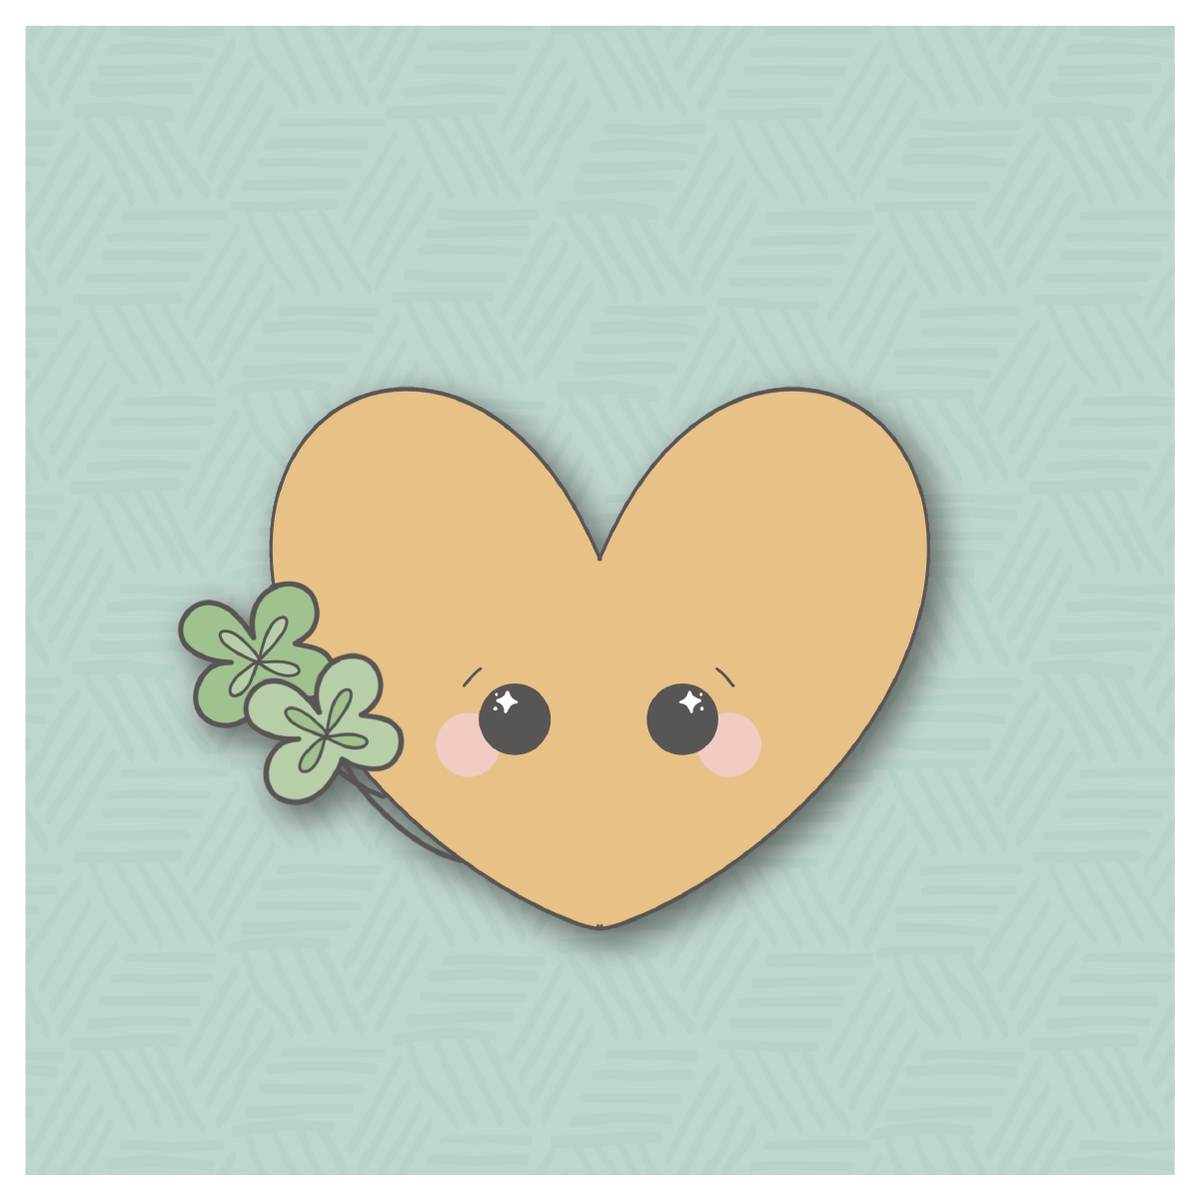 Clover Heart Cookie Cutter